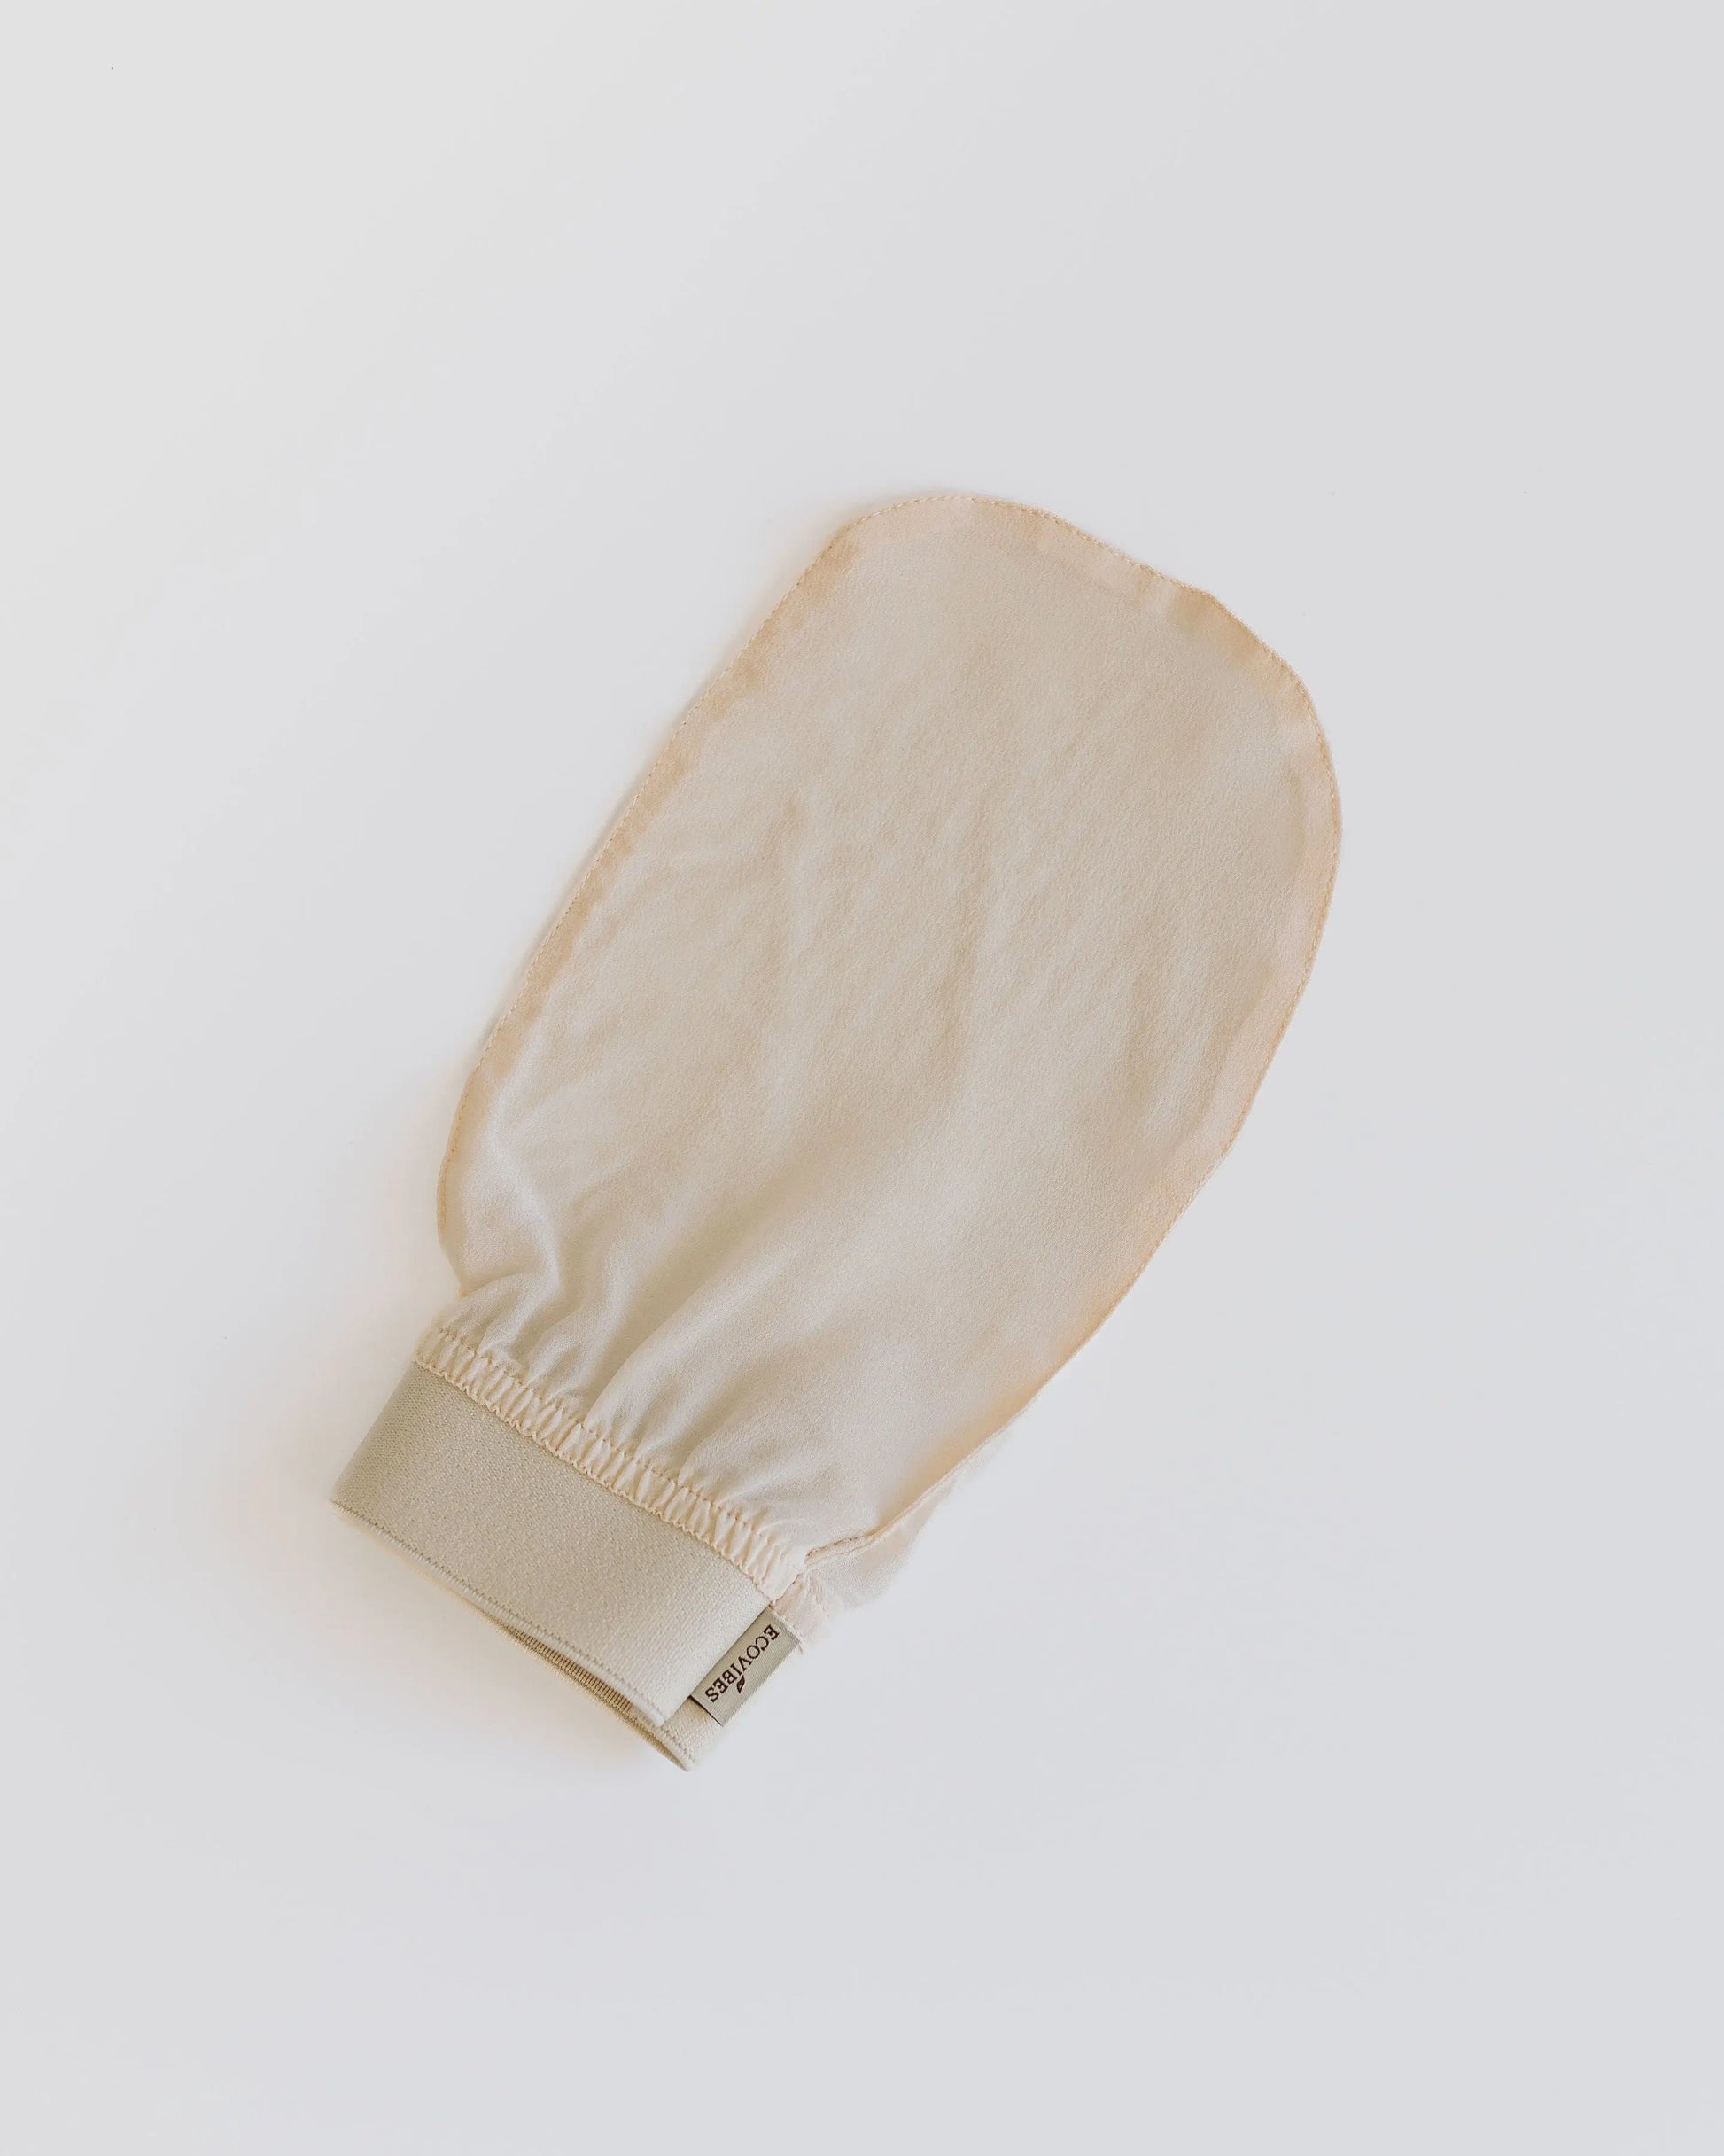 Silk Exfoliating Body Glove - Ecovibes